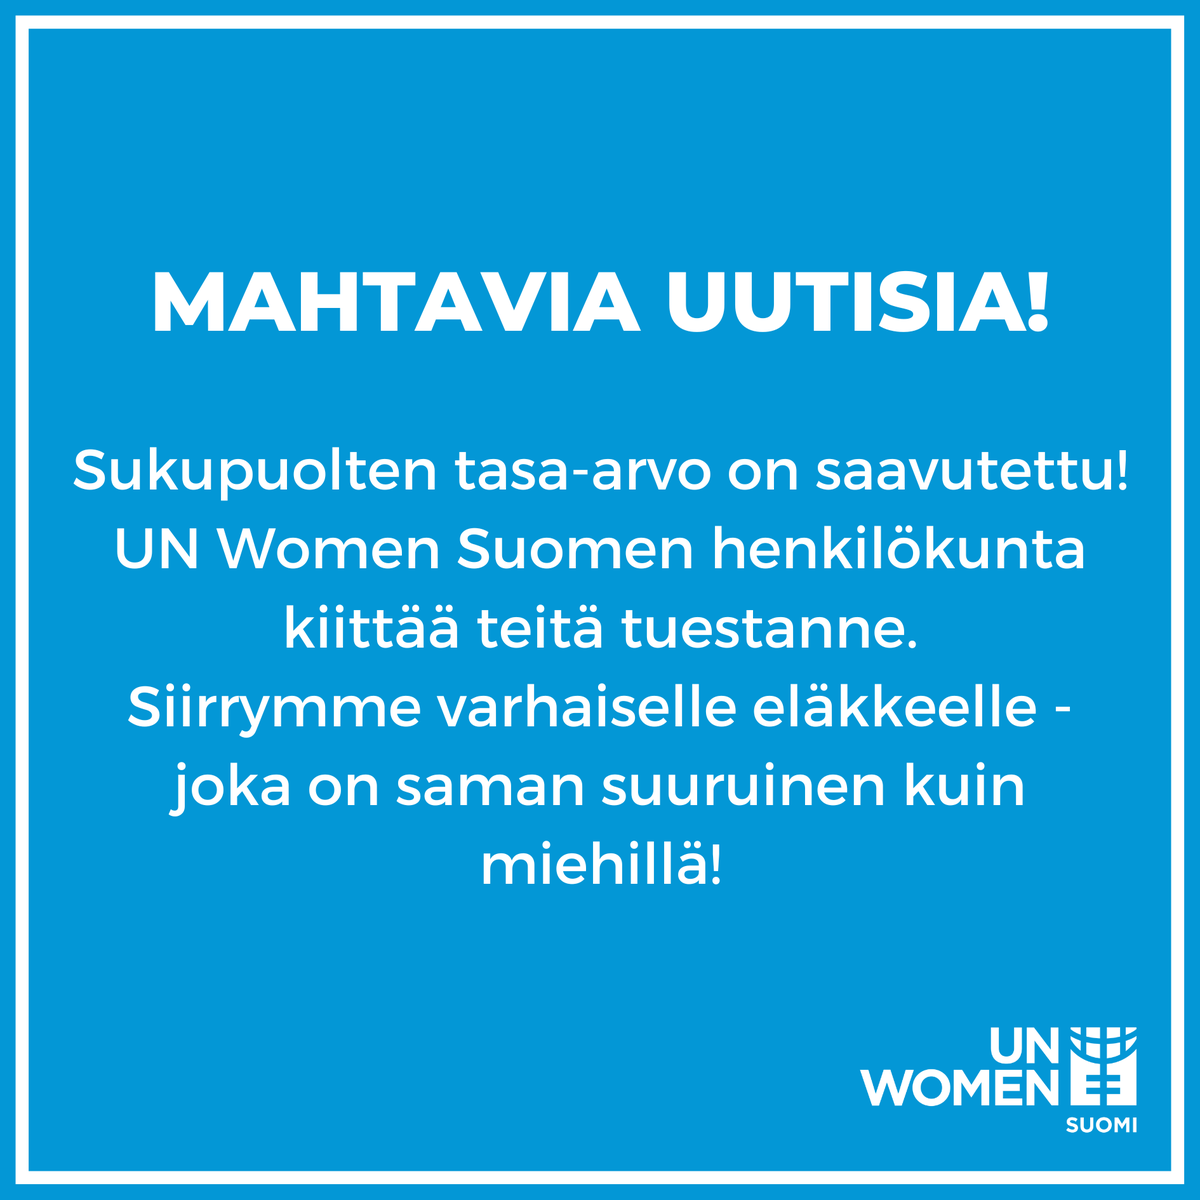 Voi kuinka toivoisimme, että tämä ei olisi aprillipilaa. Mutta vaikka tämä maailma ei vielä tänään ole todellisuutta, uskomme vakaasti, että jonain päivänä se voi olla. Voit auttaa meitä tekemään tästä maailmasta totta! Liity UN Women Suomen jäseneksi: unwomen.fi/liity-jaseneks…